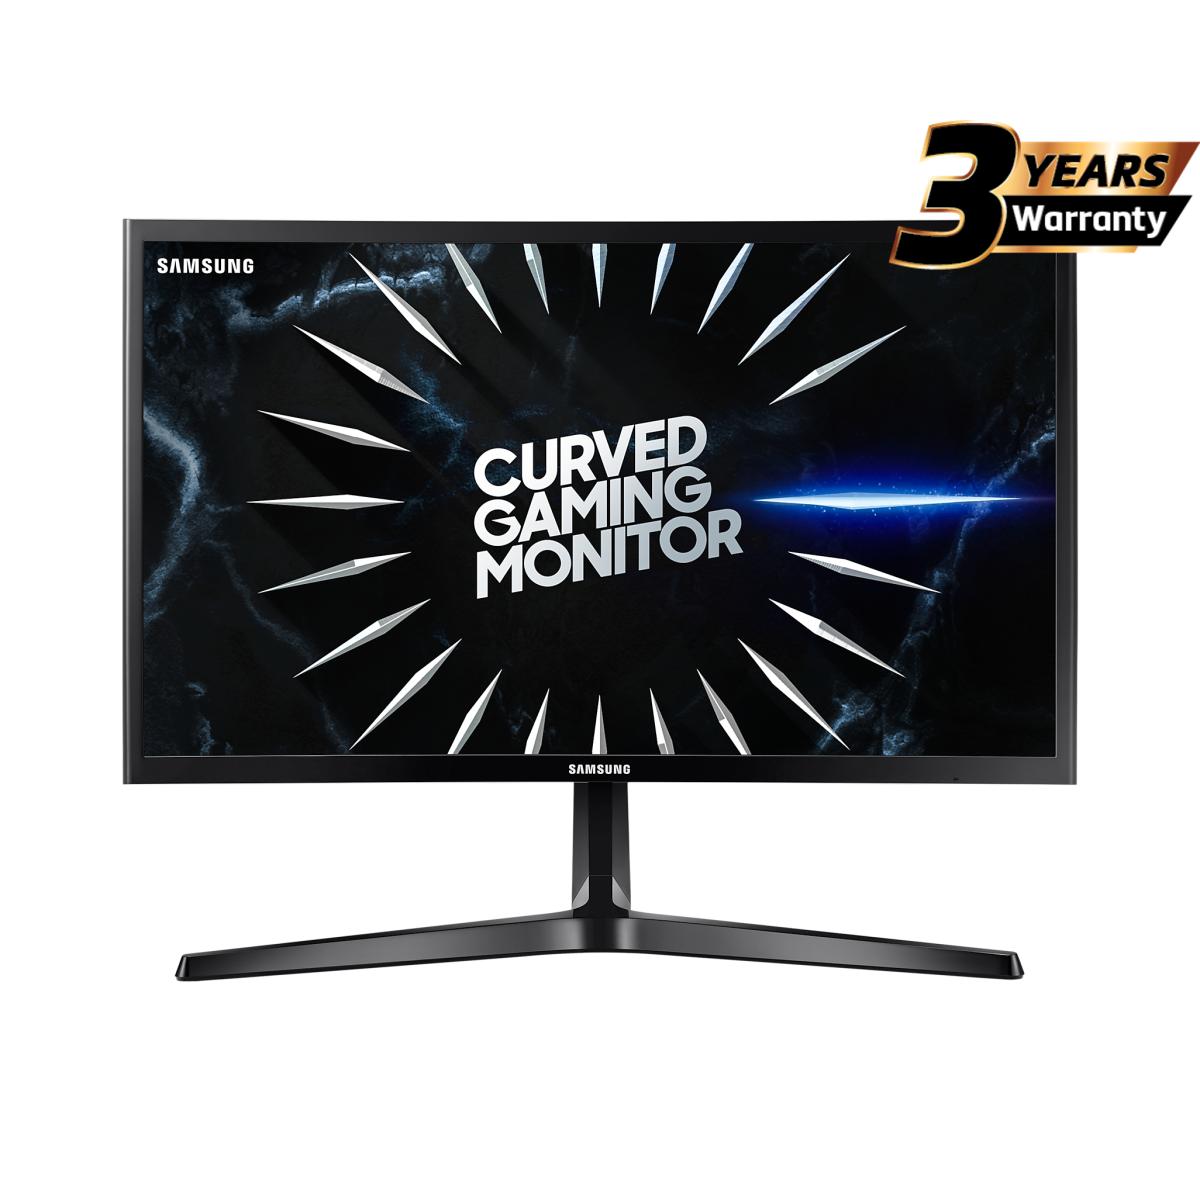 Samsung 24" CRG5 Gaming Monitor